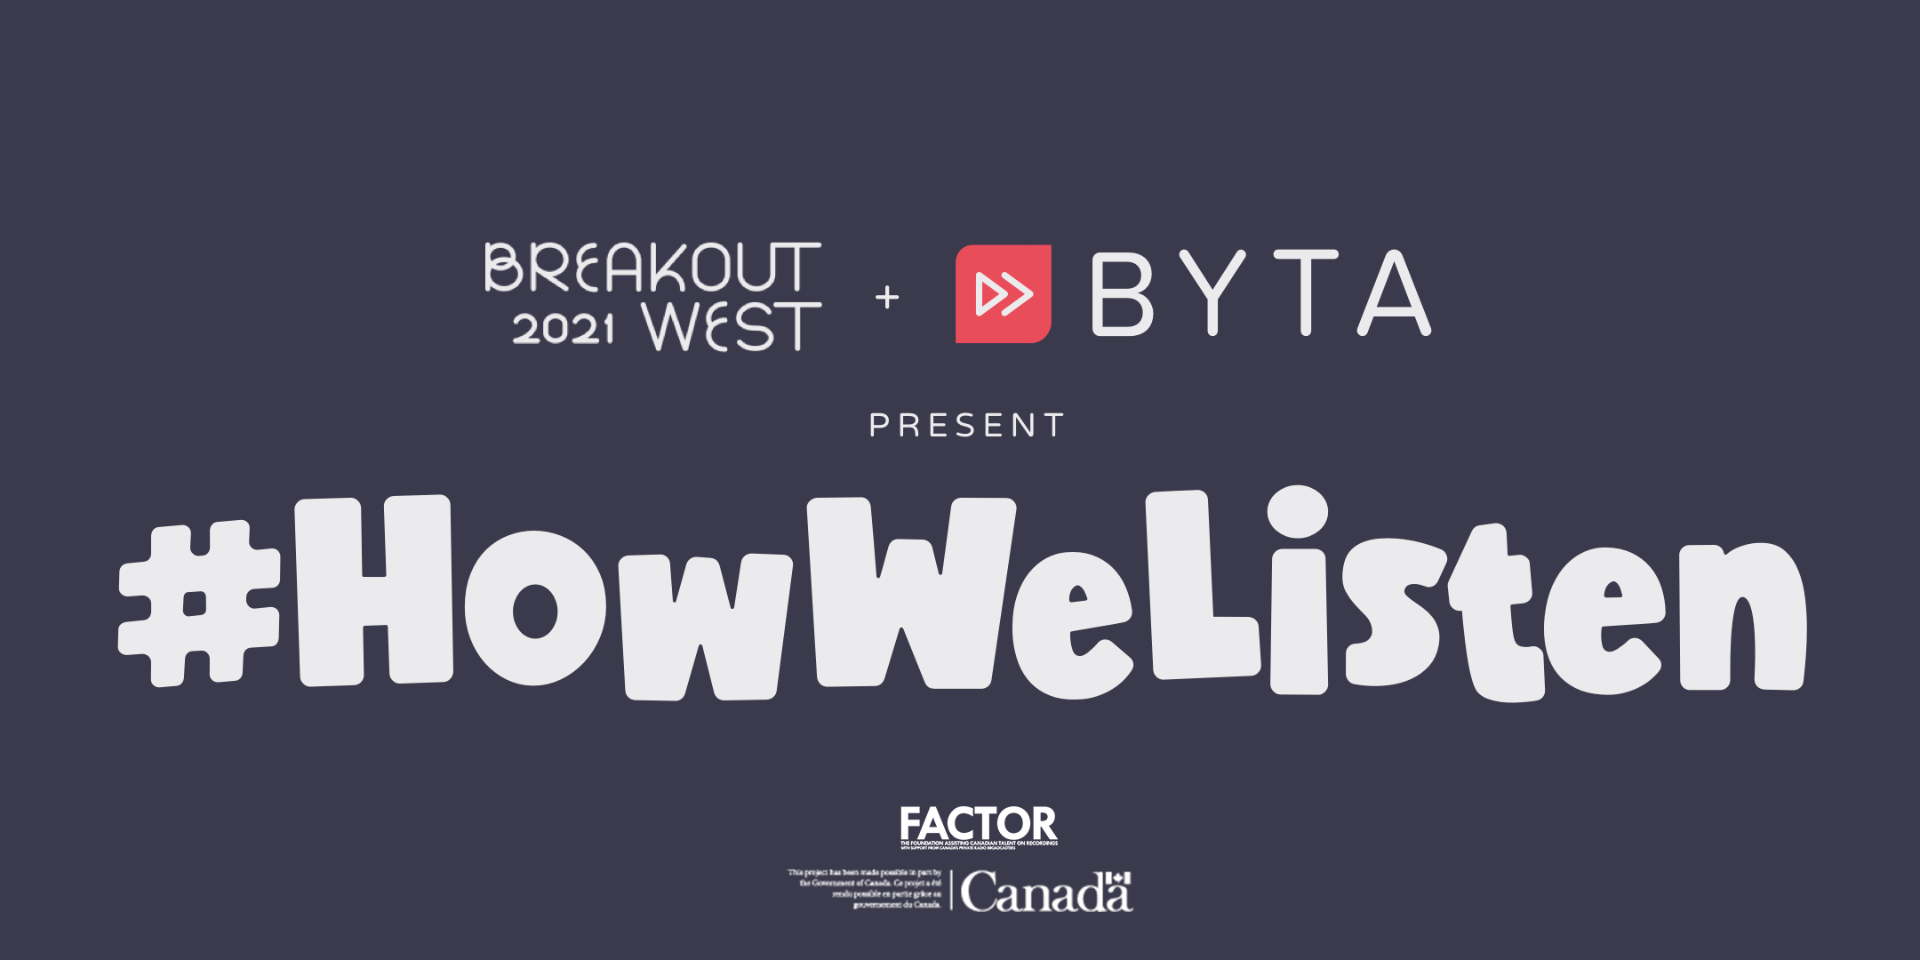 BreakOut West and Byta present #HowWeListen